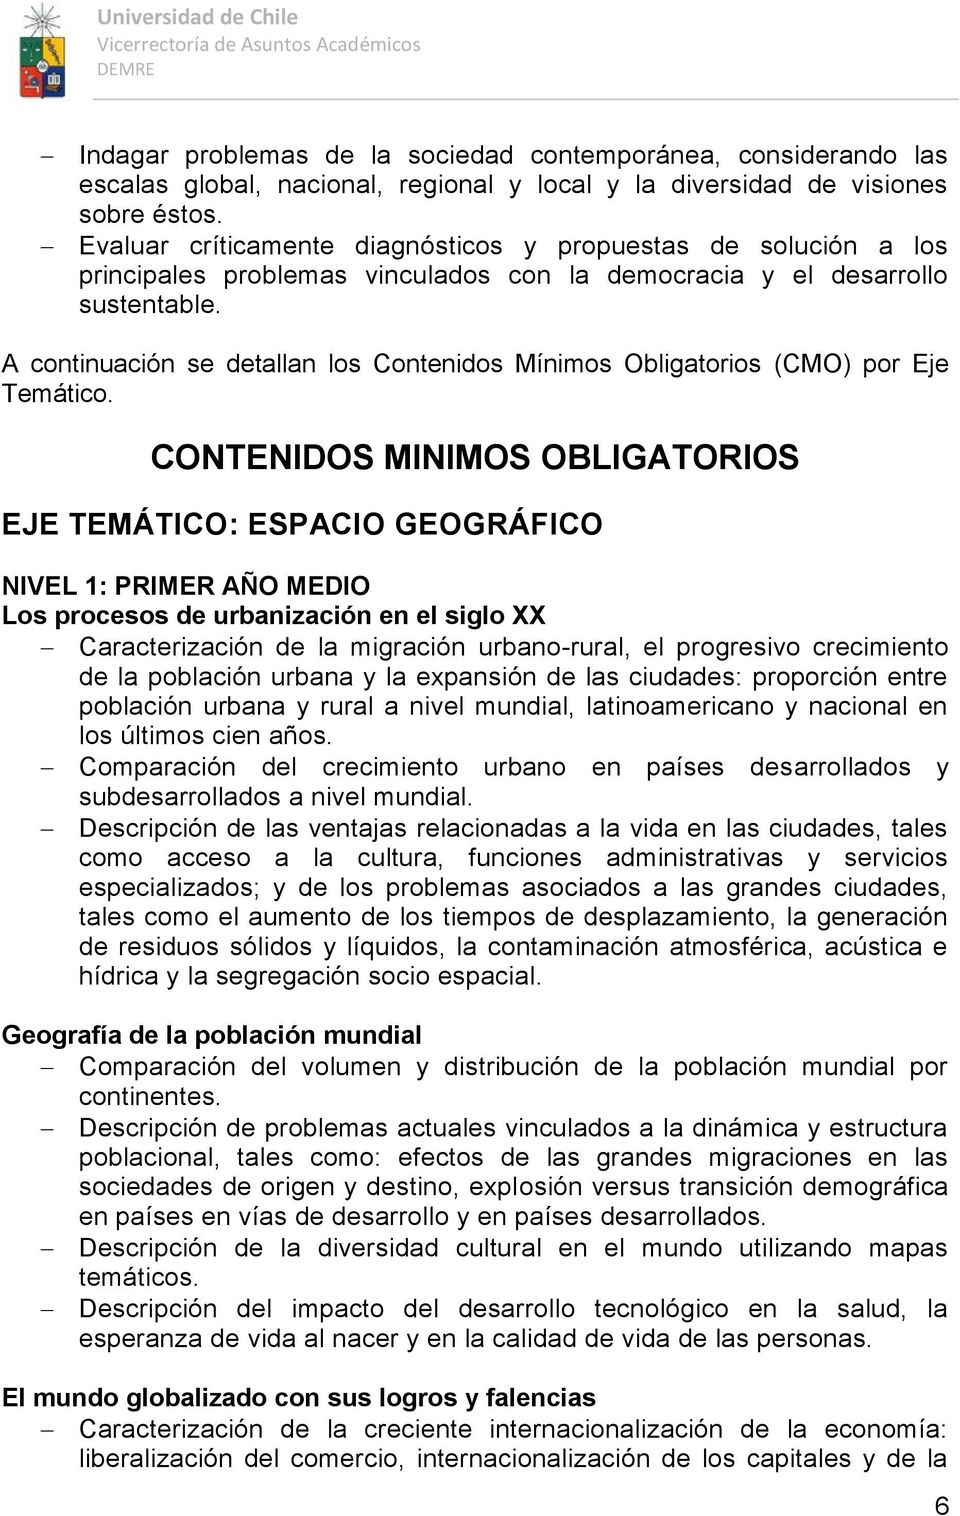 A continuación se detallan los Contenidos Mínimos Obligatorios (CMO) por Eje Temático.